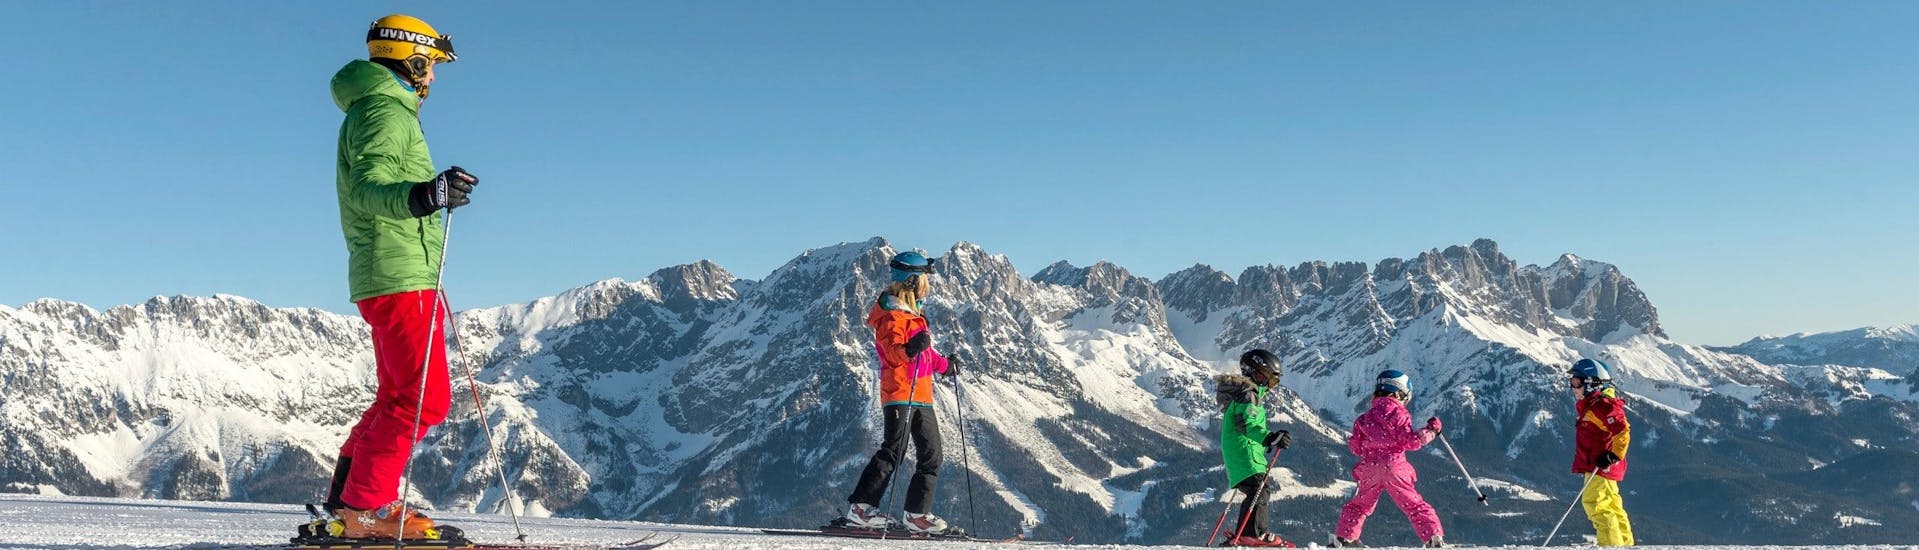 Vue sur un paysage de montagne ensoleillé lors d'un cours de ski avec l'une des écoles de ski de la station de ski SkiWelt Wilder Kaiser-Brixental.